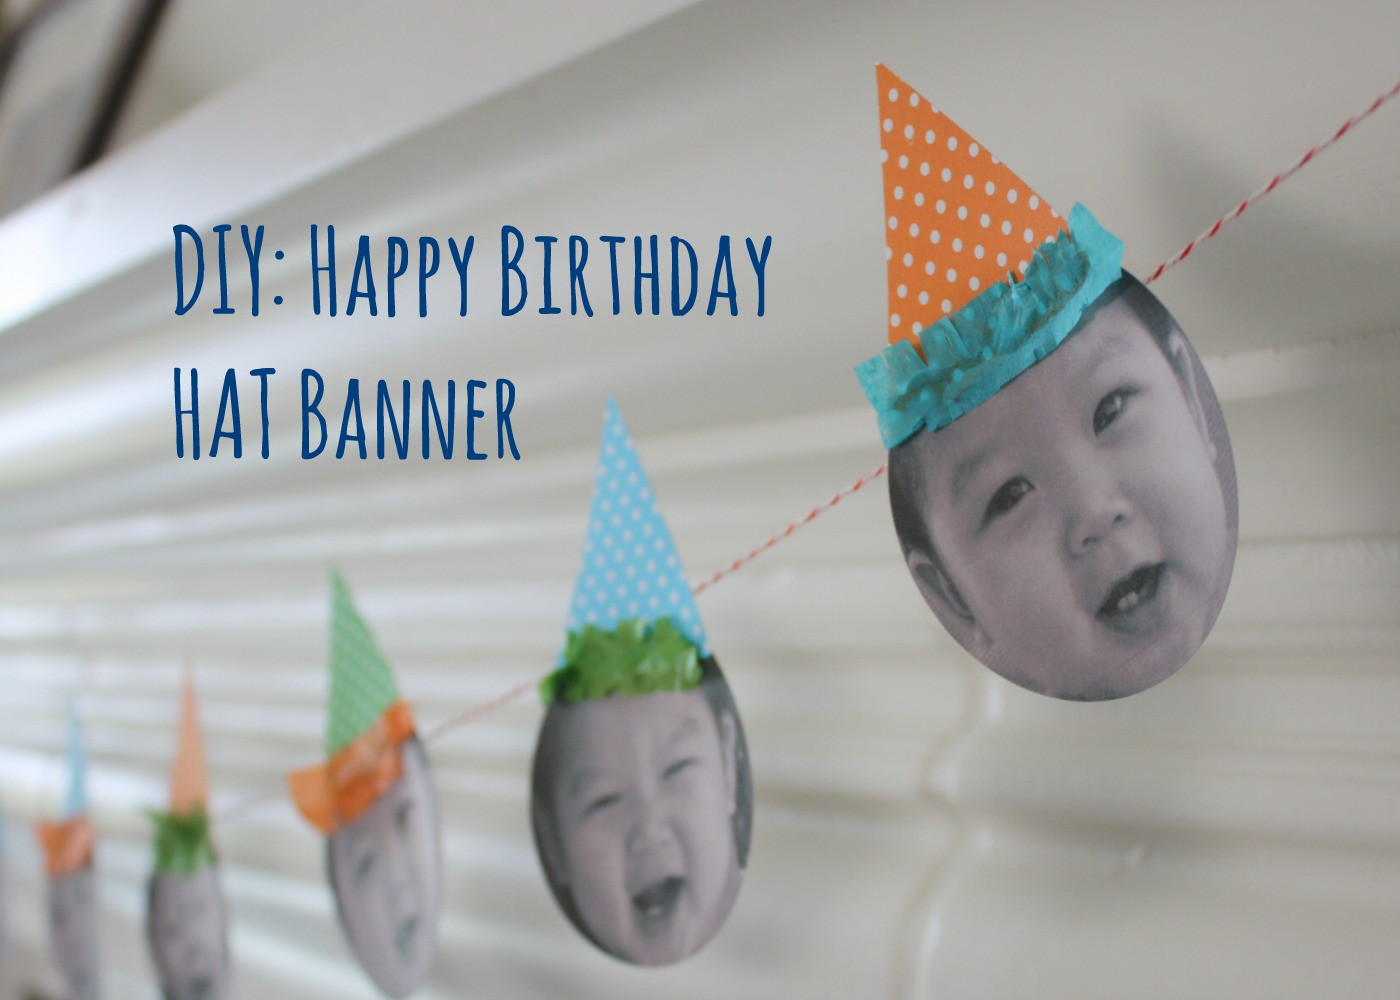 Best ideas about DIY Happy Birthday Banner
. Save or Pin DIY Happy Birthday Hat Banner Now.